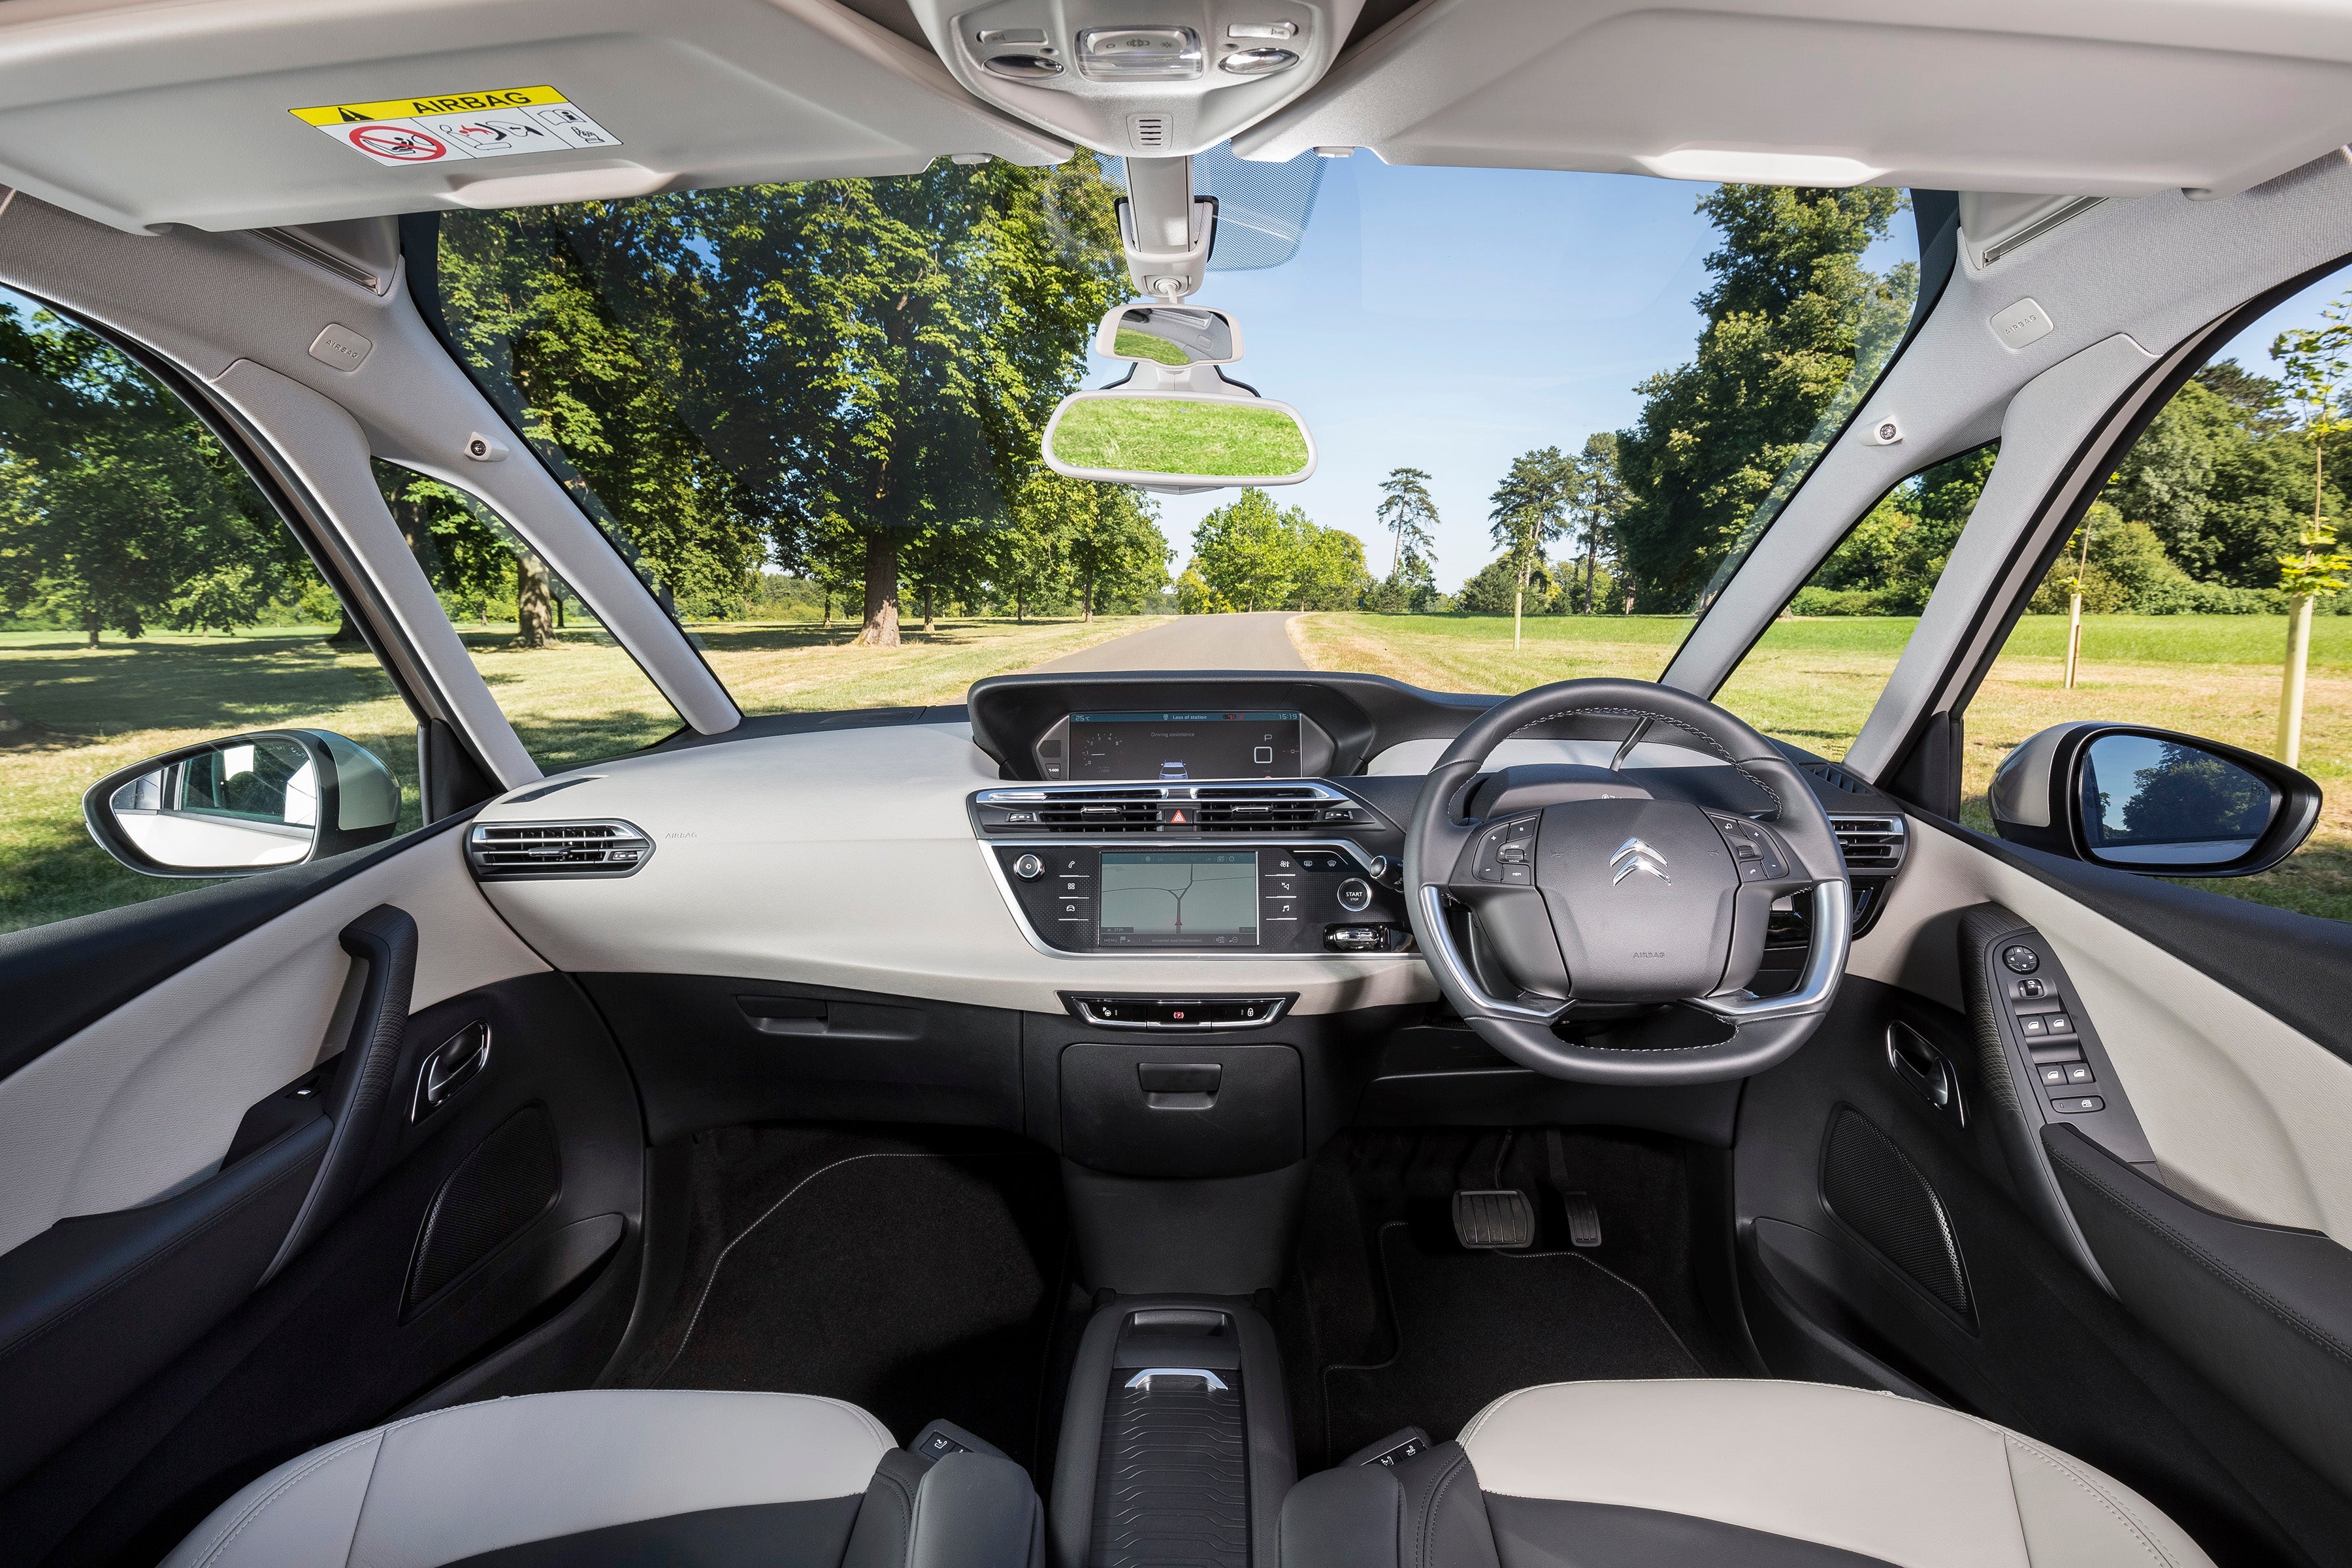 2015 Citroen C4 Picasso Review - Drive